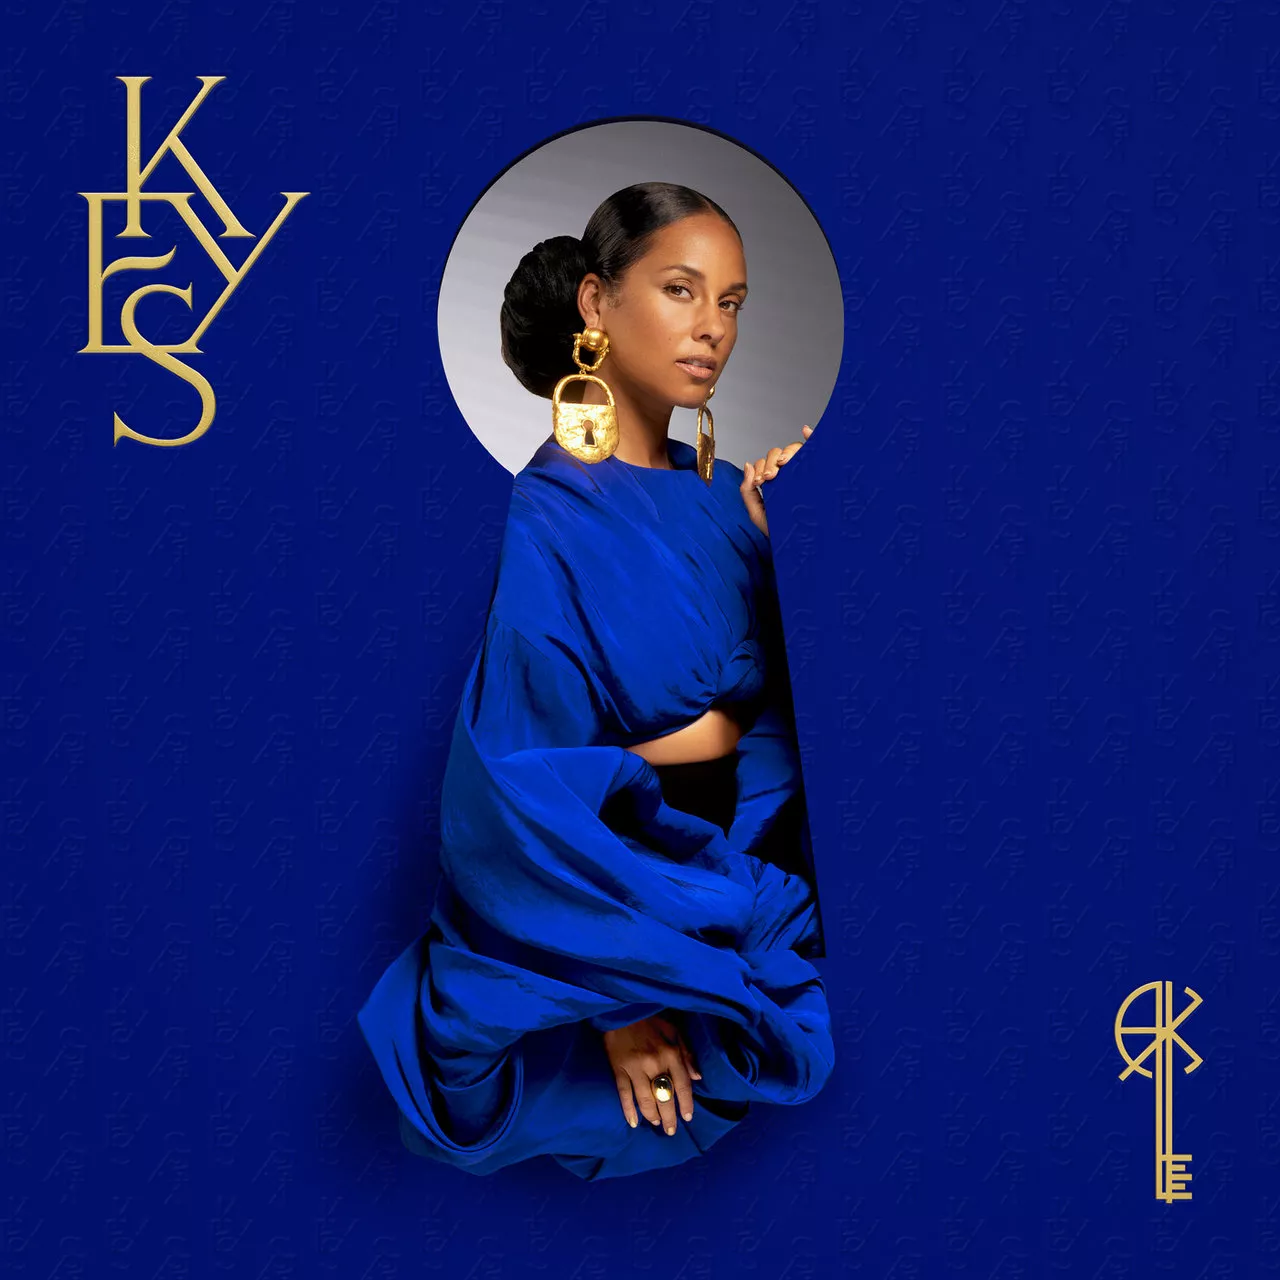 KEYS - Alicia Keys